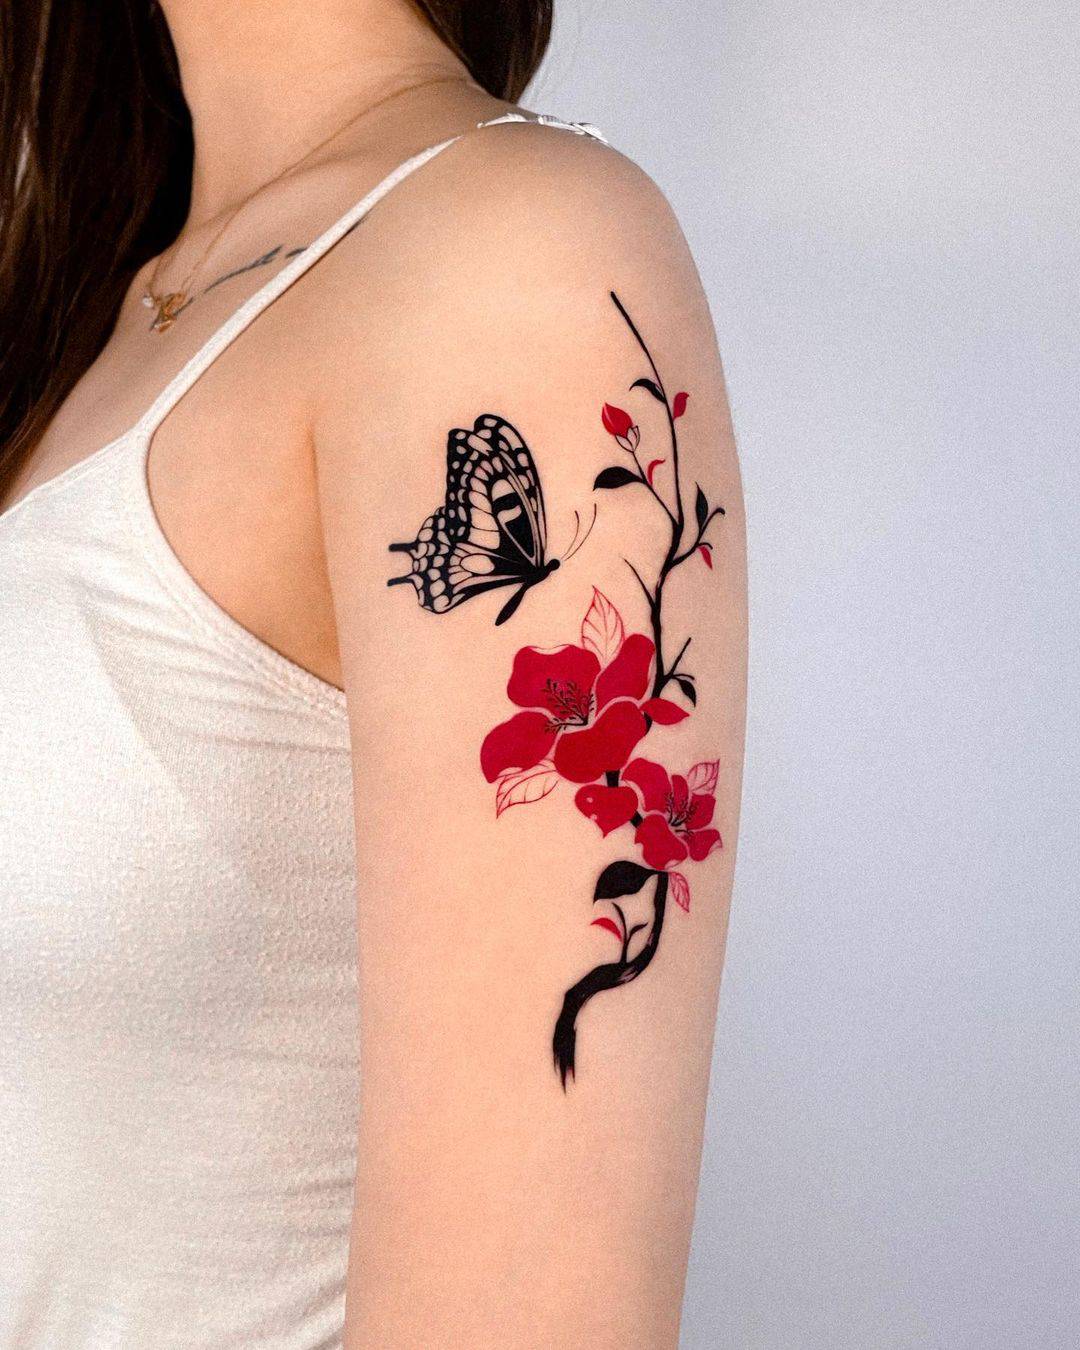 Cute butterfly tattoo by offtattooer